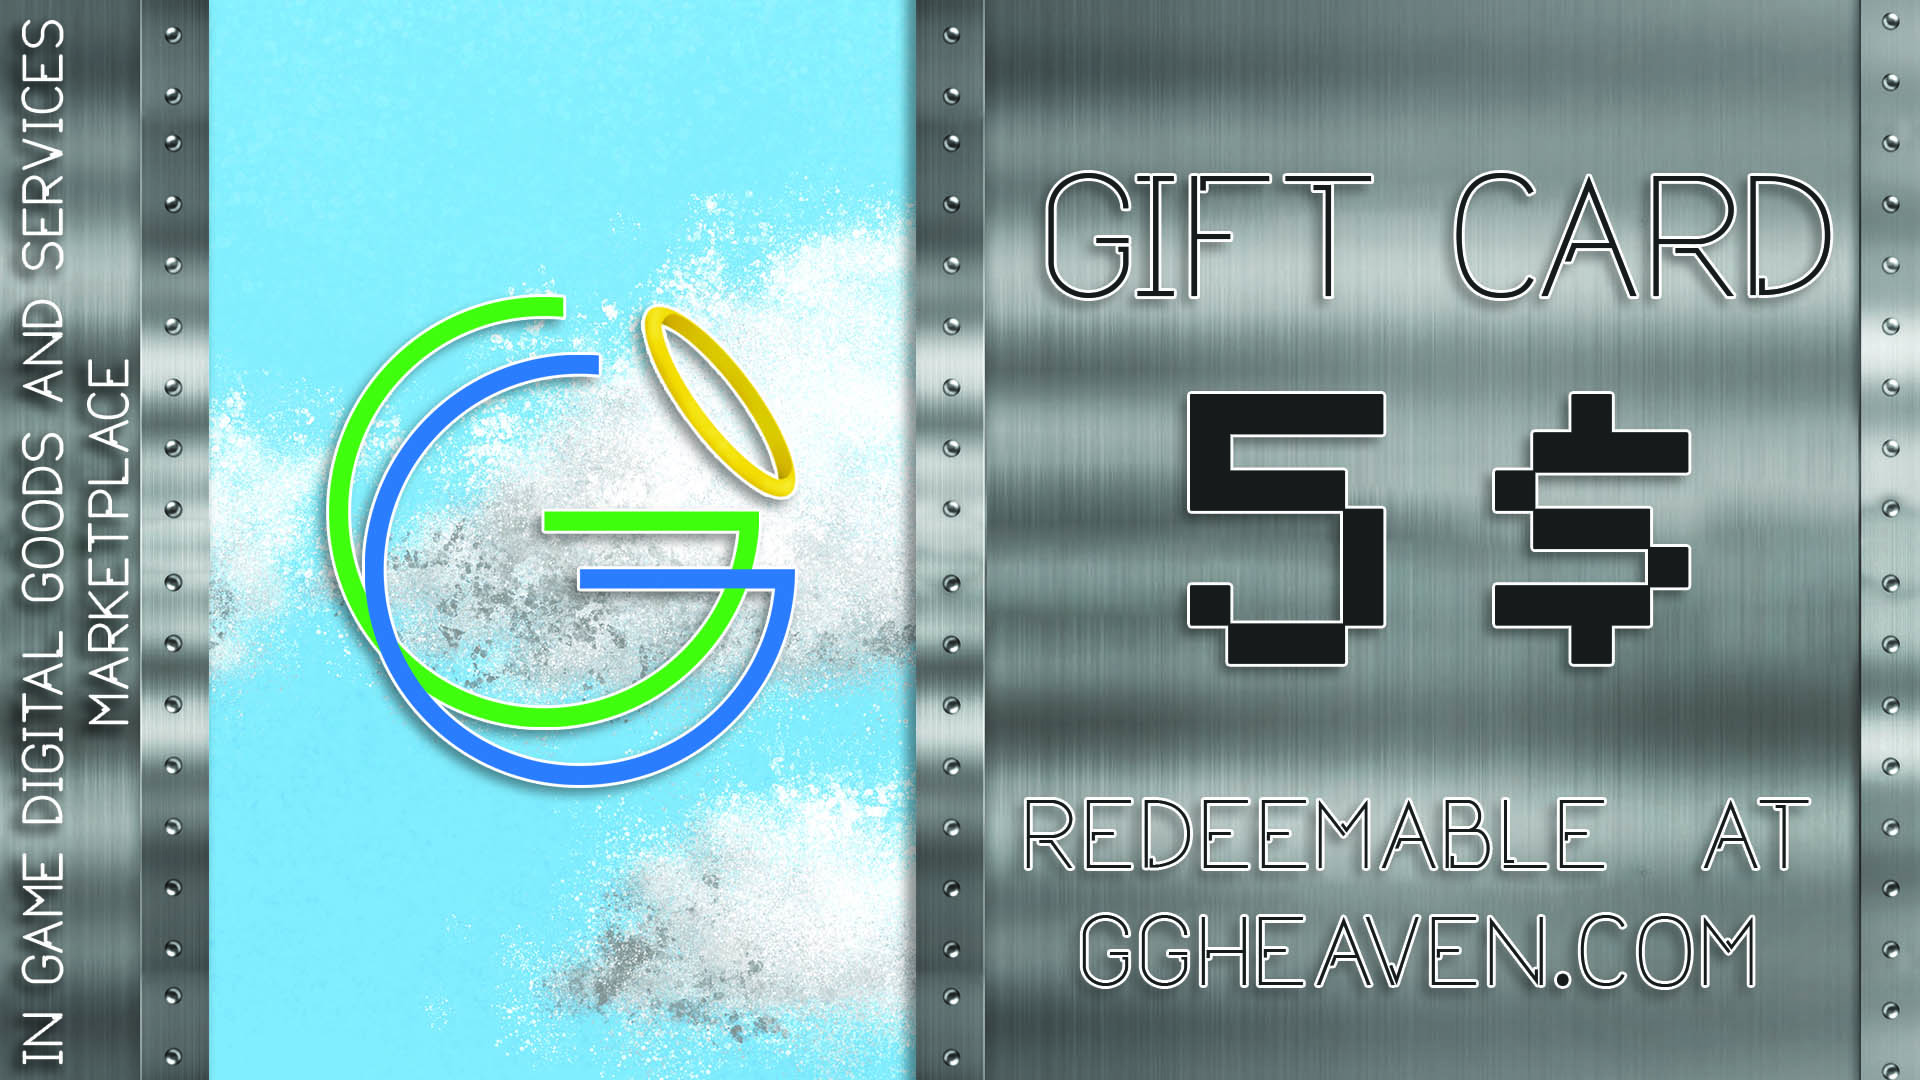 GGHeaven.com 5$ Gift Card, $6.27